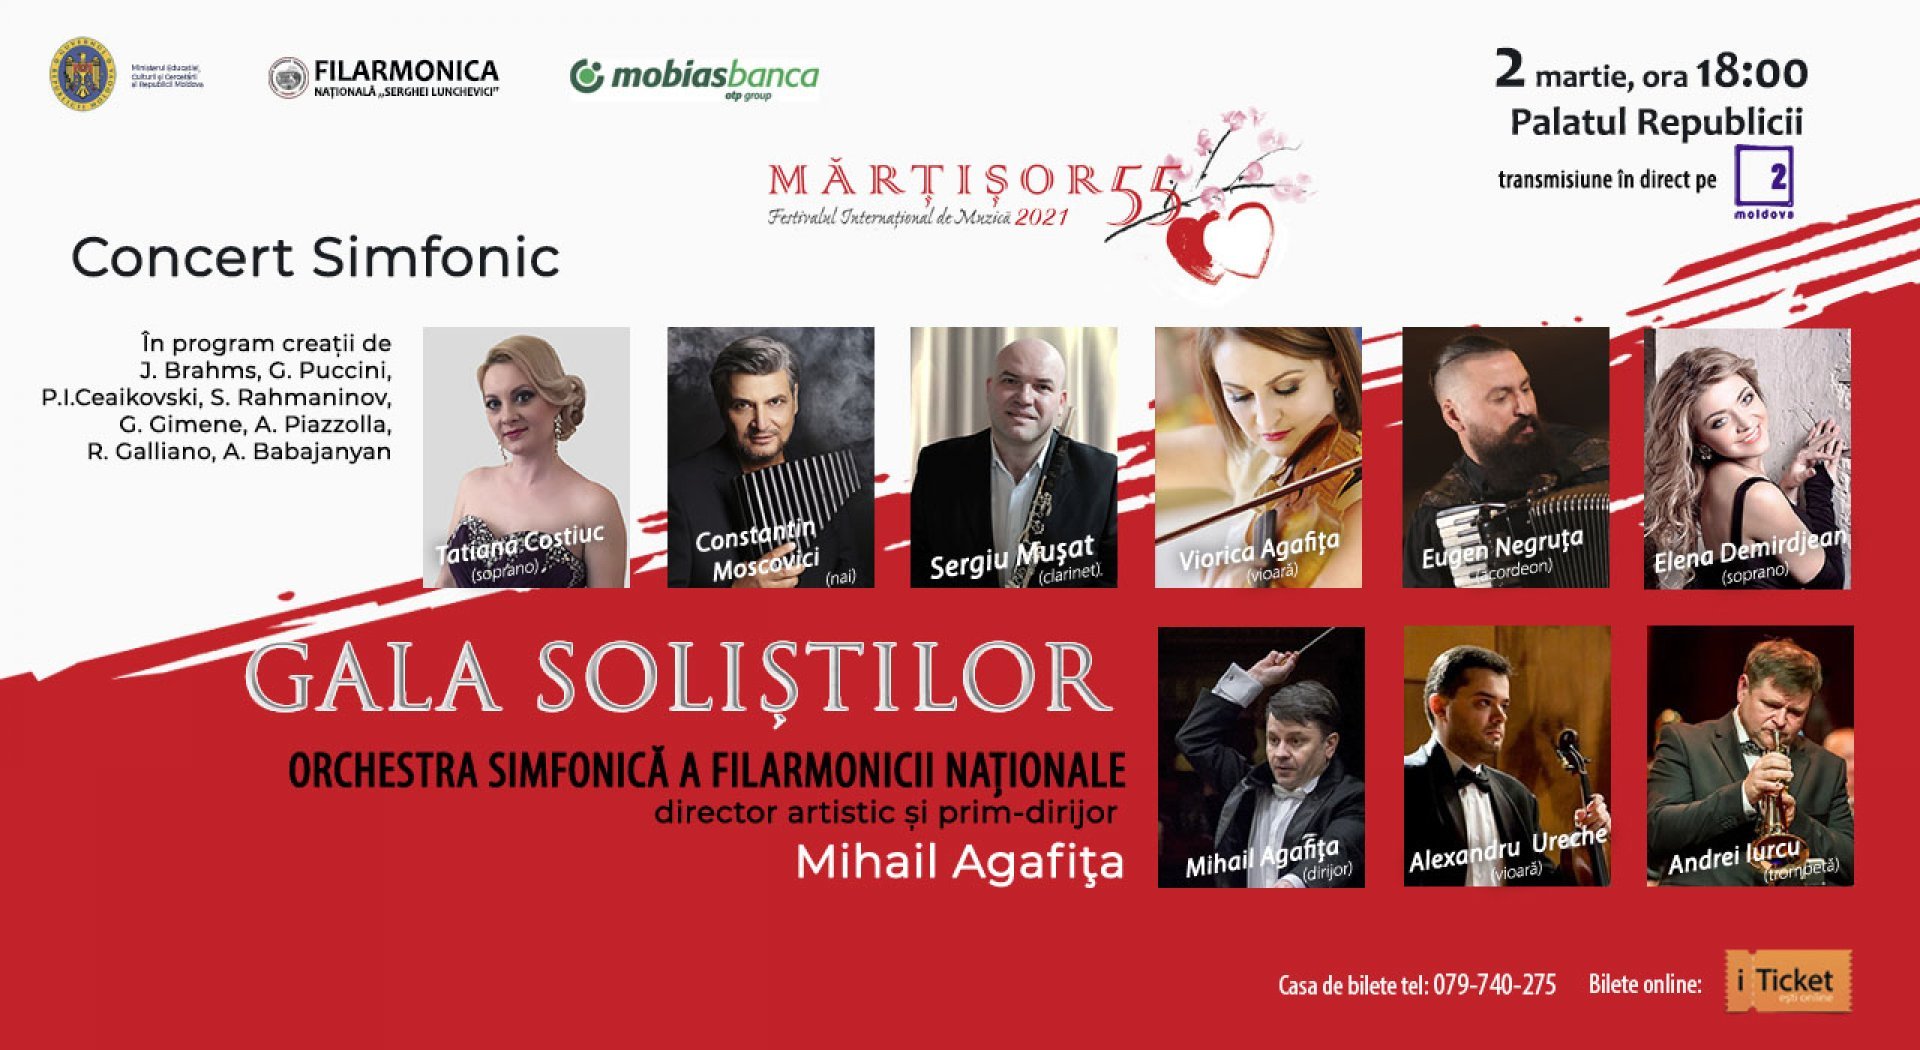 Concert Simfonic - Gala Soliștilor